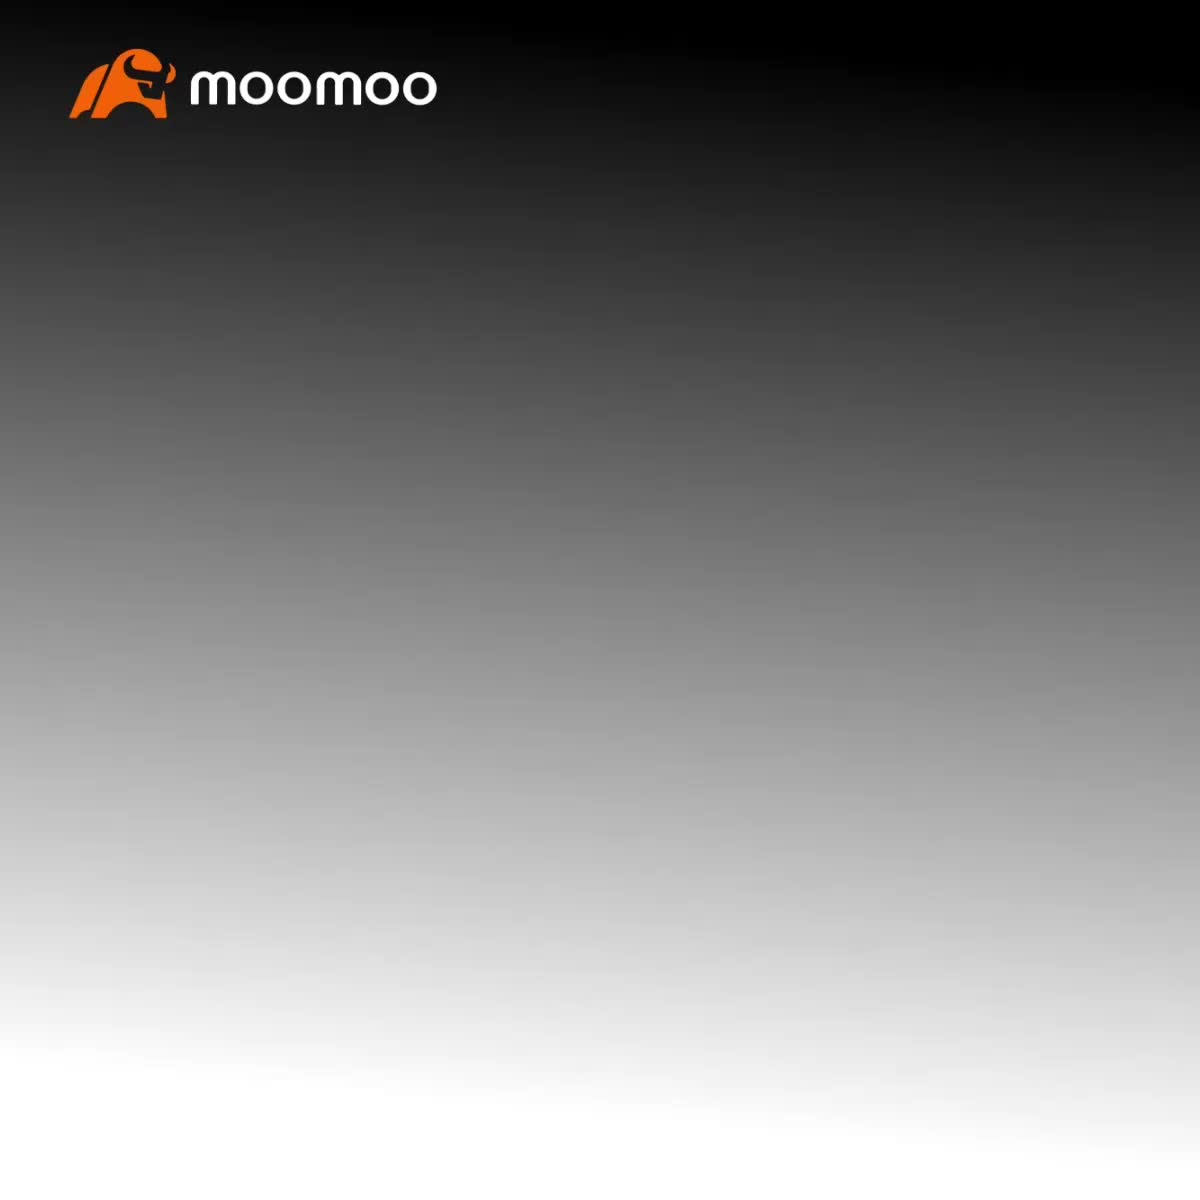 Moomoo 的新桌面版本：加入并有可能以功能体验官的身份获得50美元的现金奖励！